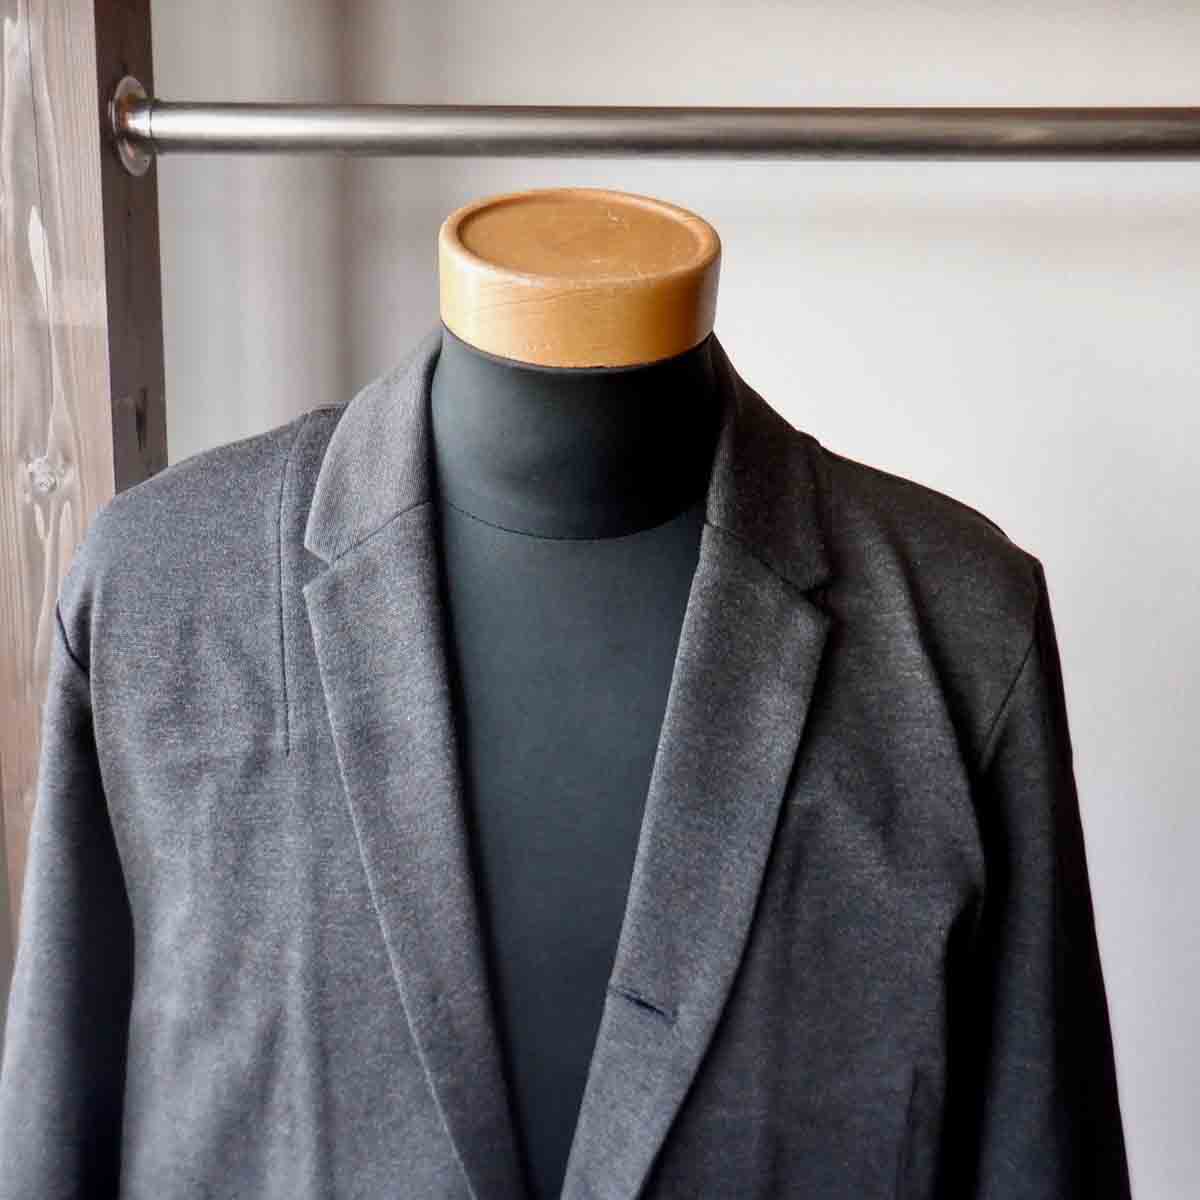 【期間限定ポイント5倍】Re made in tokyo japan アールイー Dress Jersey Jacket ドレスジャージジャケット 2 colors